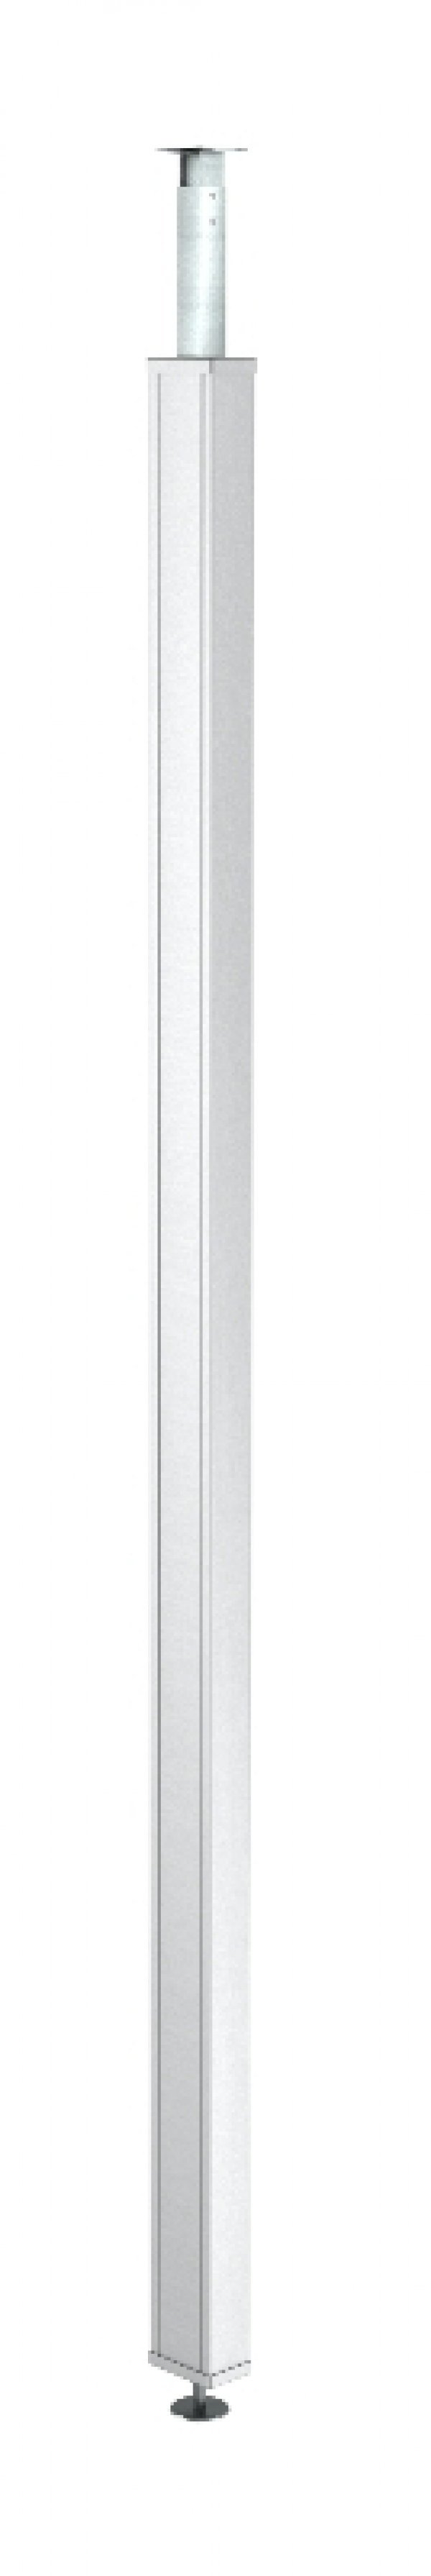 6286530 - OBO BETTERMANN Электромонтажная колонна 70x110x2800 мм (сталь,белый) (ISS70110STSRW).